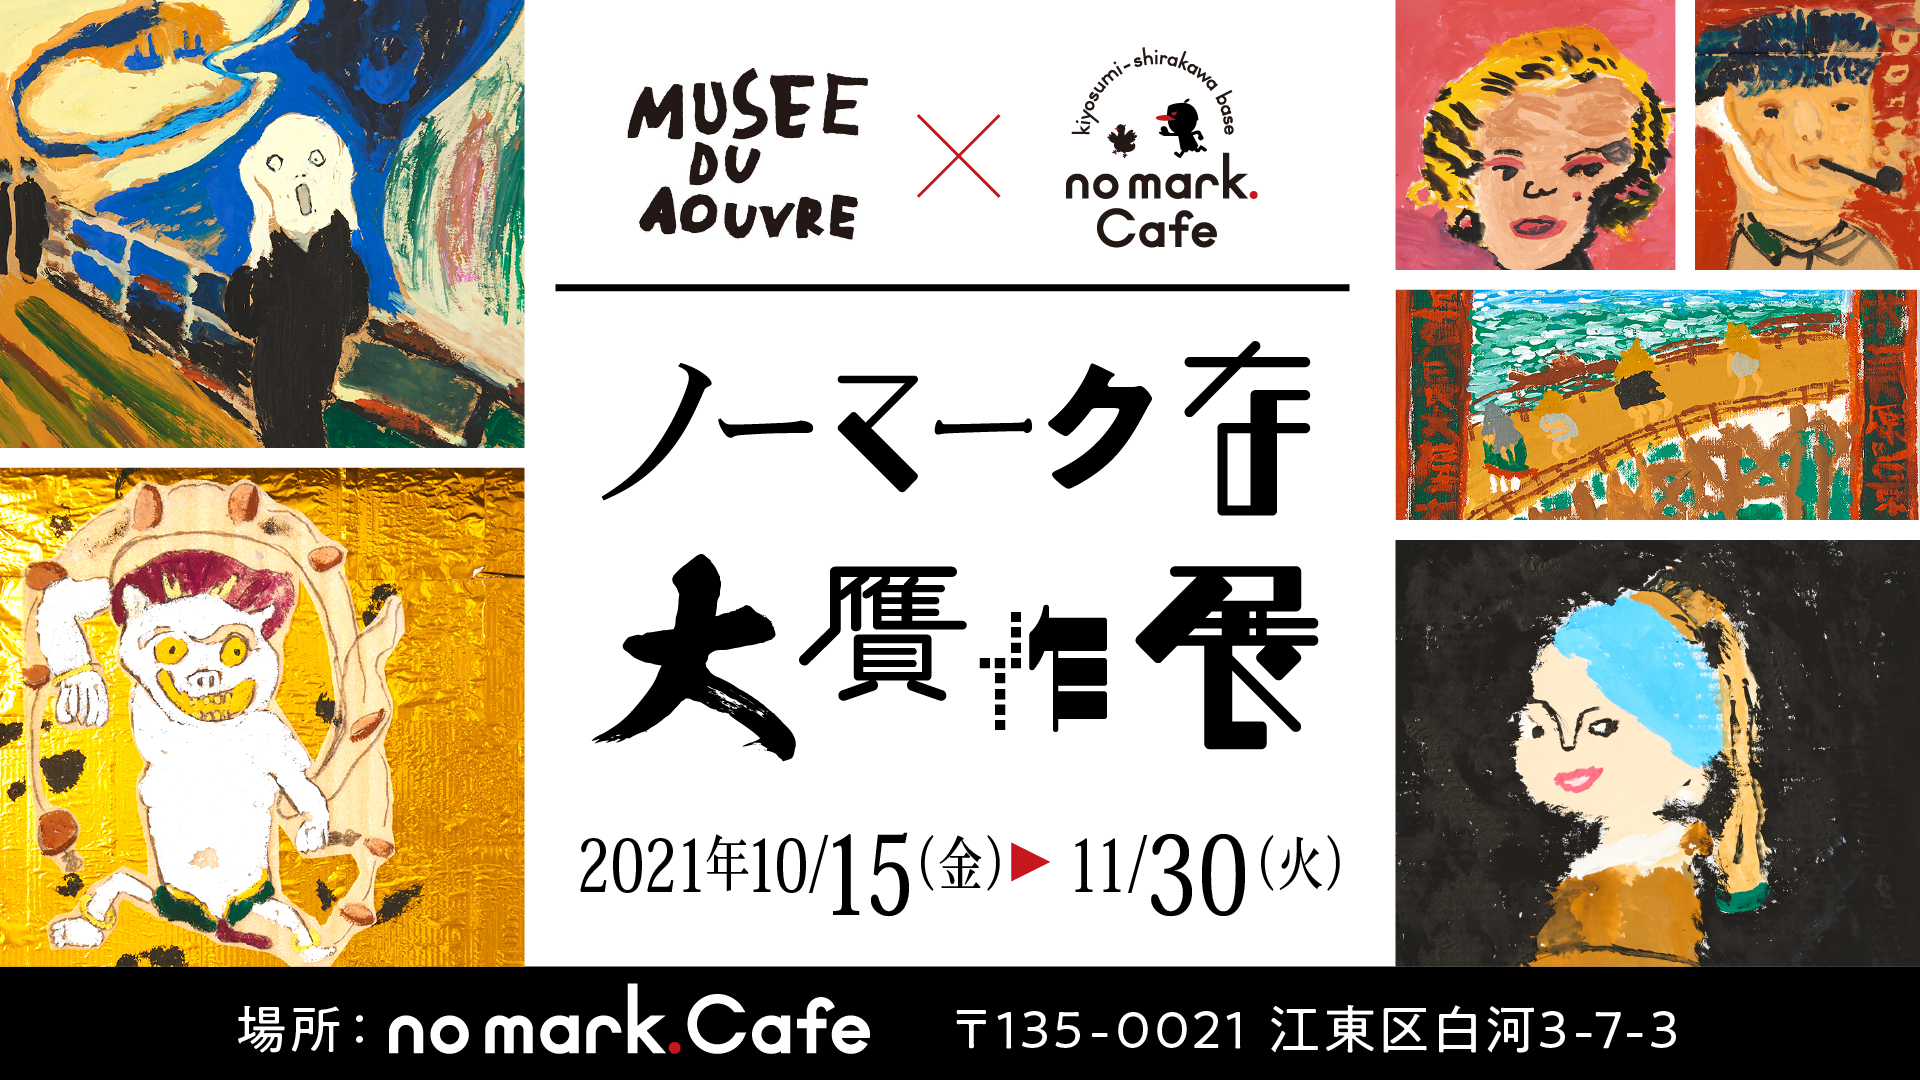 アーブル美術館✖️no mark.Cafeの「ノーマークな大贋作展」1